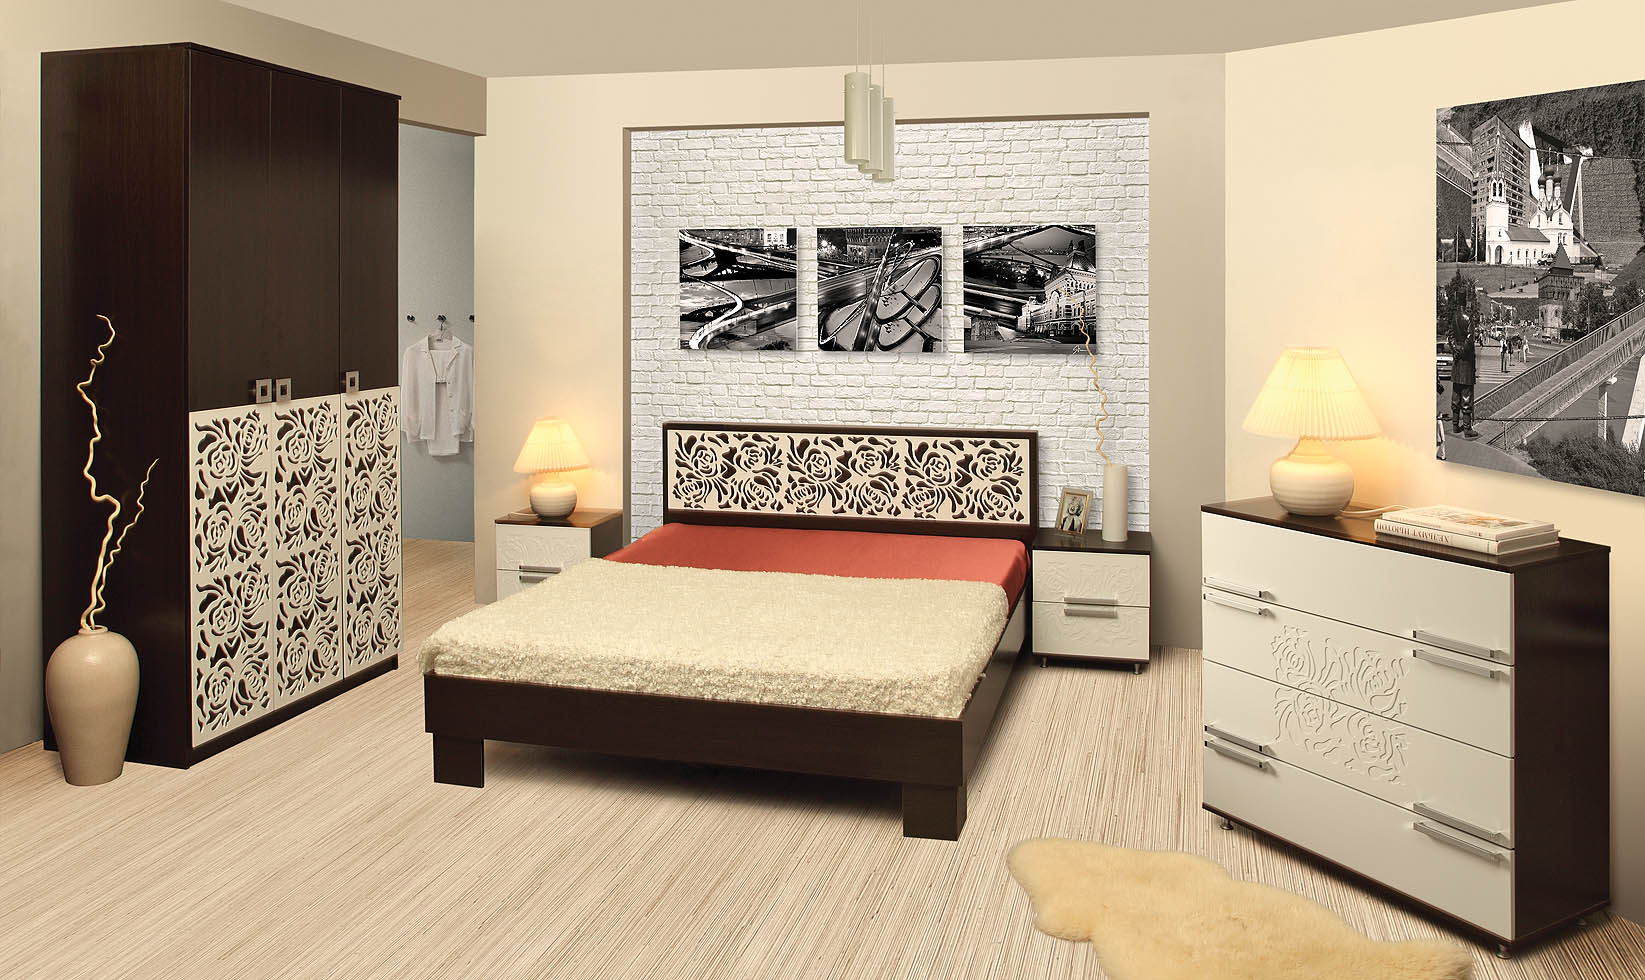 спальный гарнитур для спальни в стиле минимализм: кровать, тумба, шкаф, прикроватные тумбочки